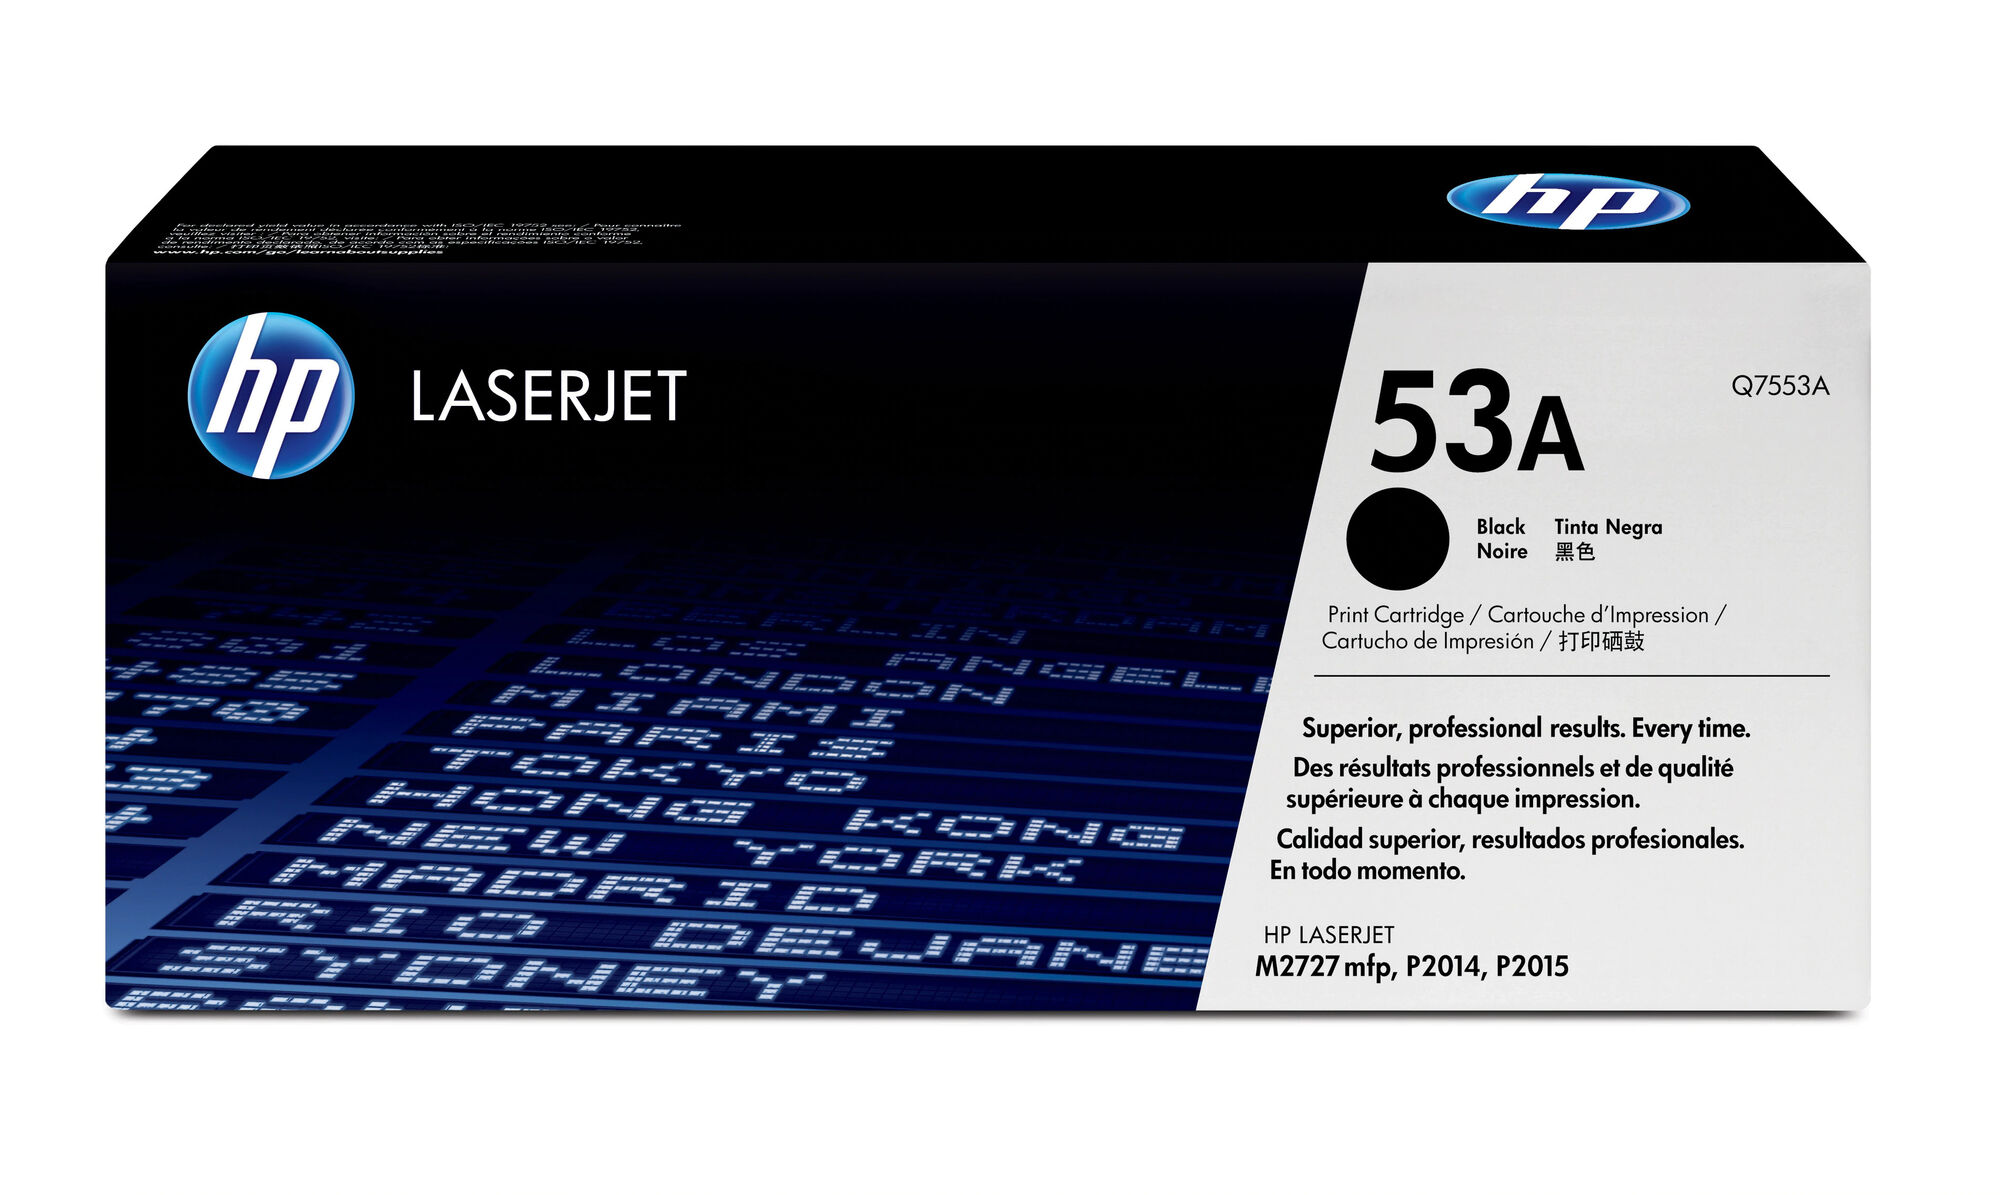 Картридж для печати HP Картридж HP 53A Q7553A вид печати лазерный, цвет Черный, емкость